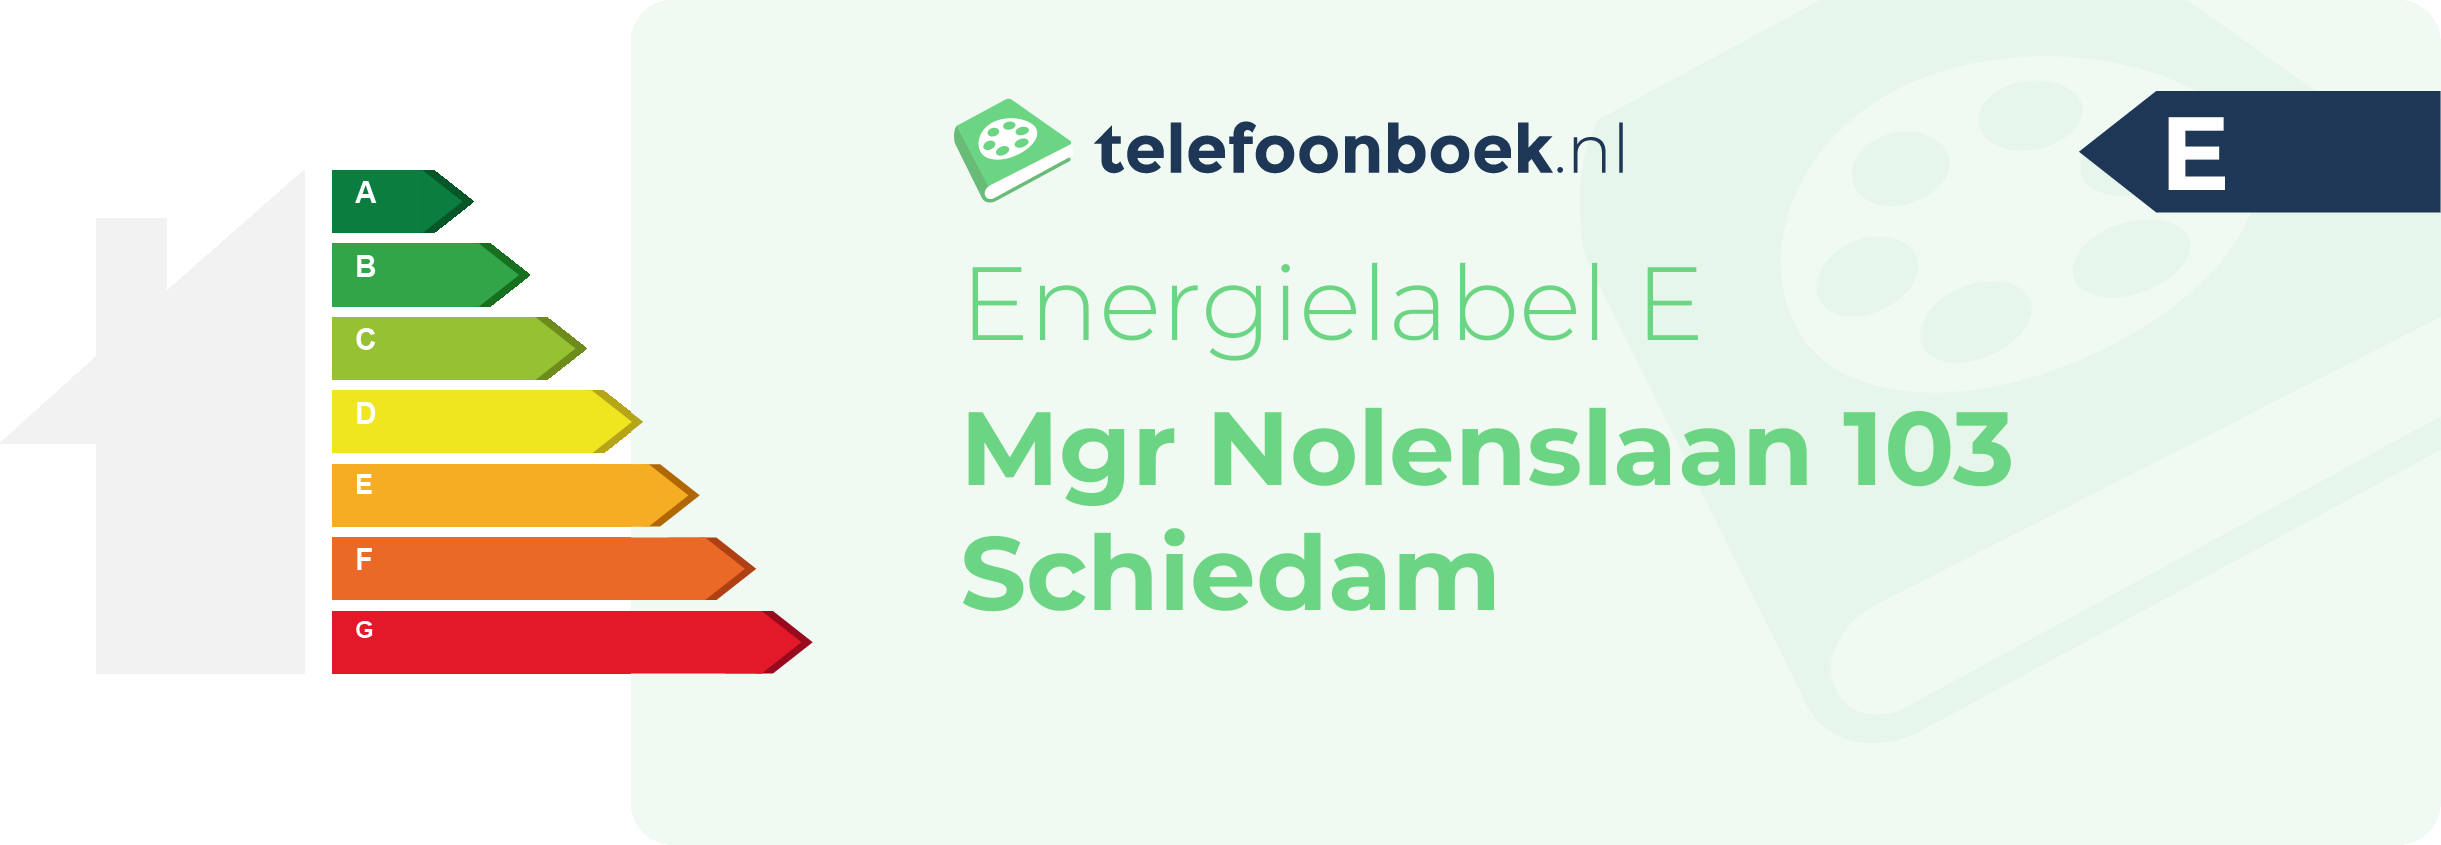 Energielabel Mgr Nolenslaan 103 Schiedam